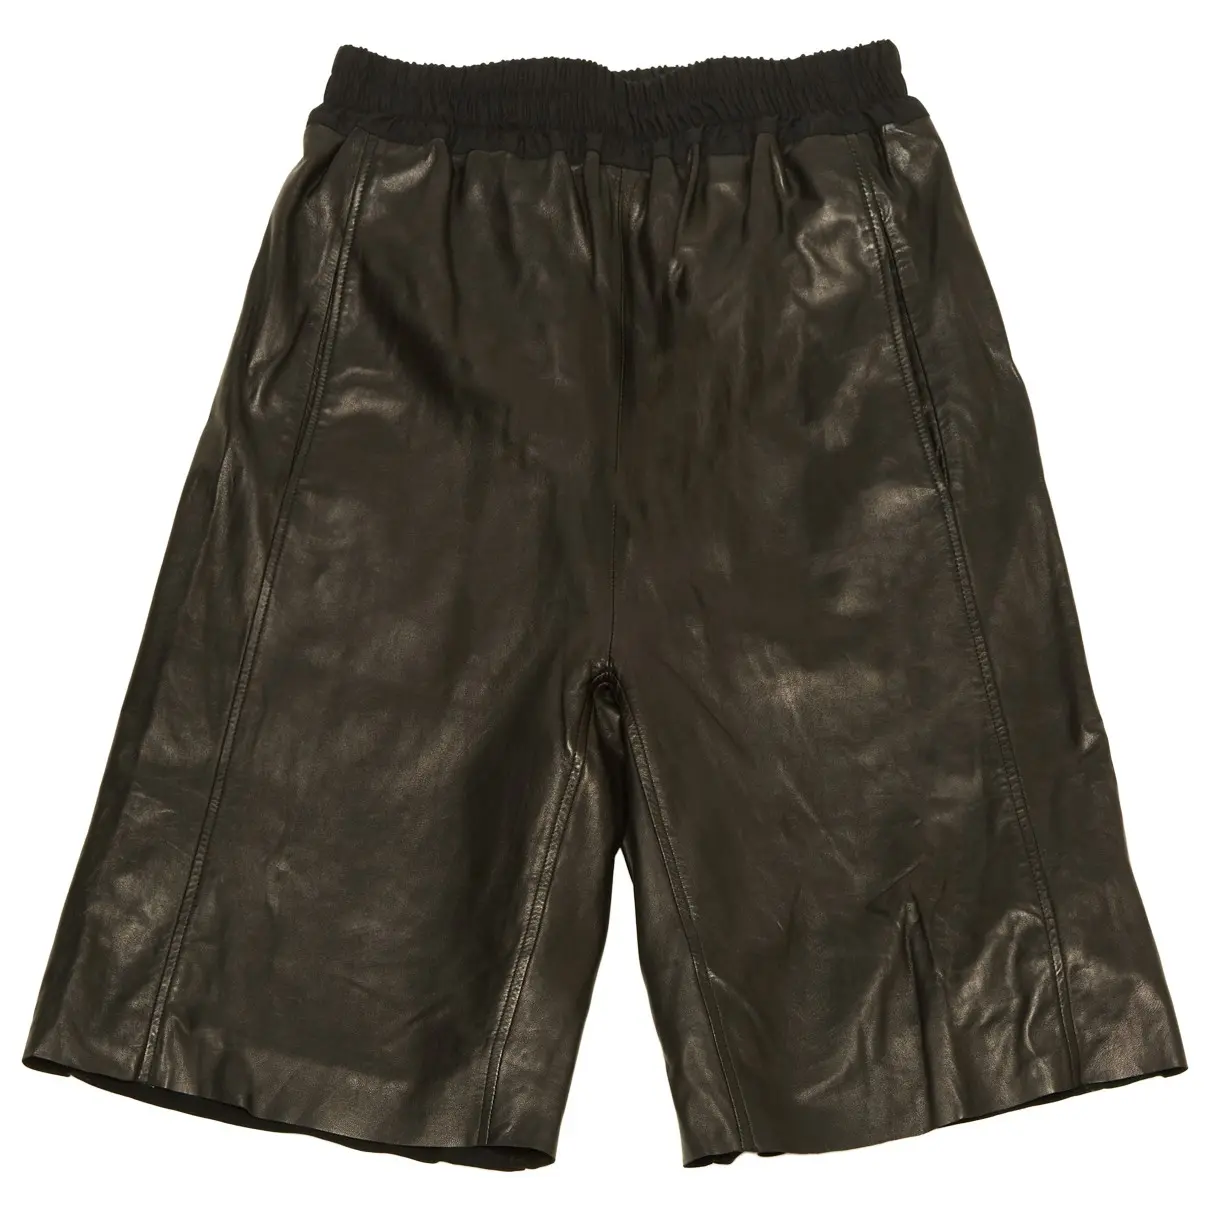 Leather short pants Pièce D'Anarchive